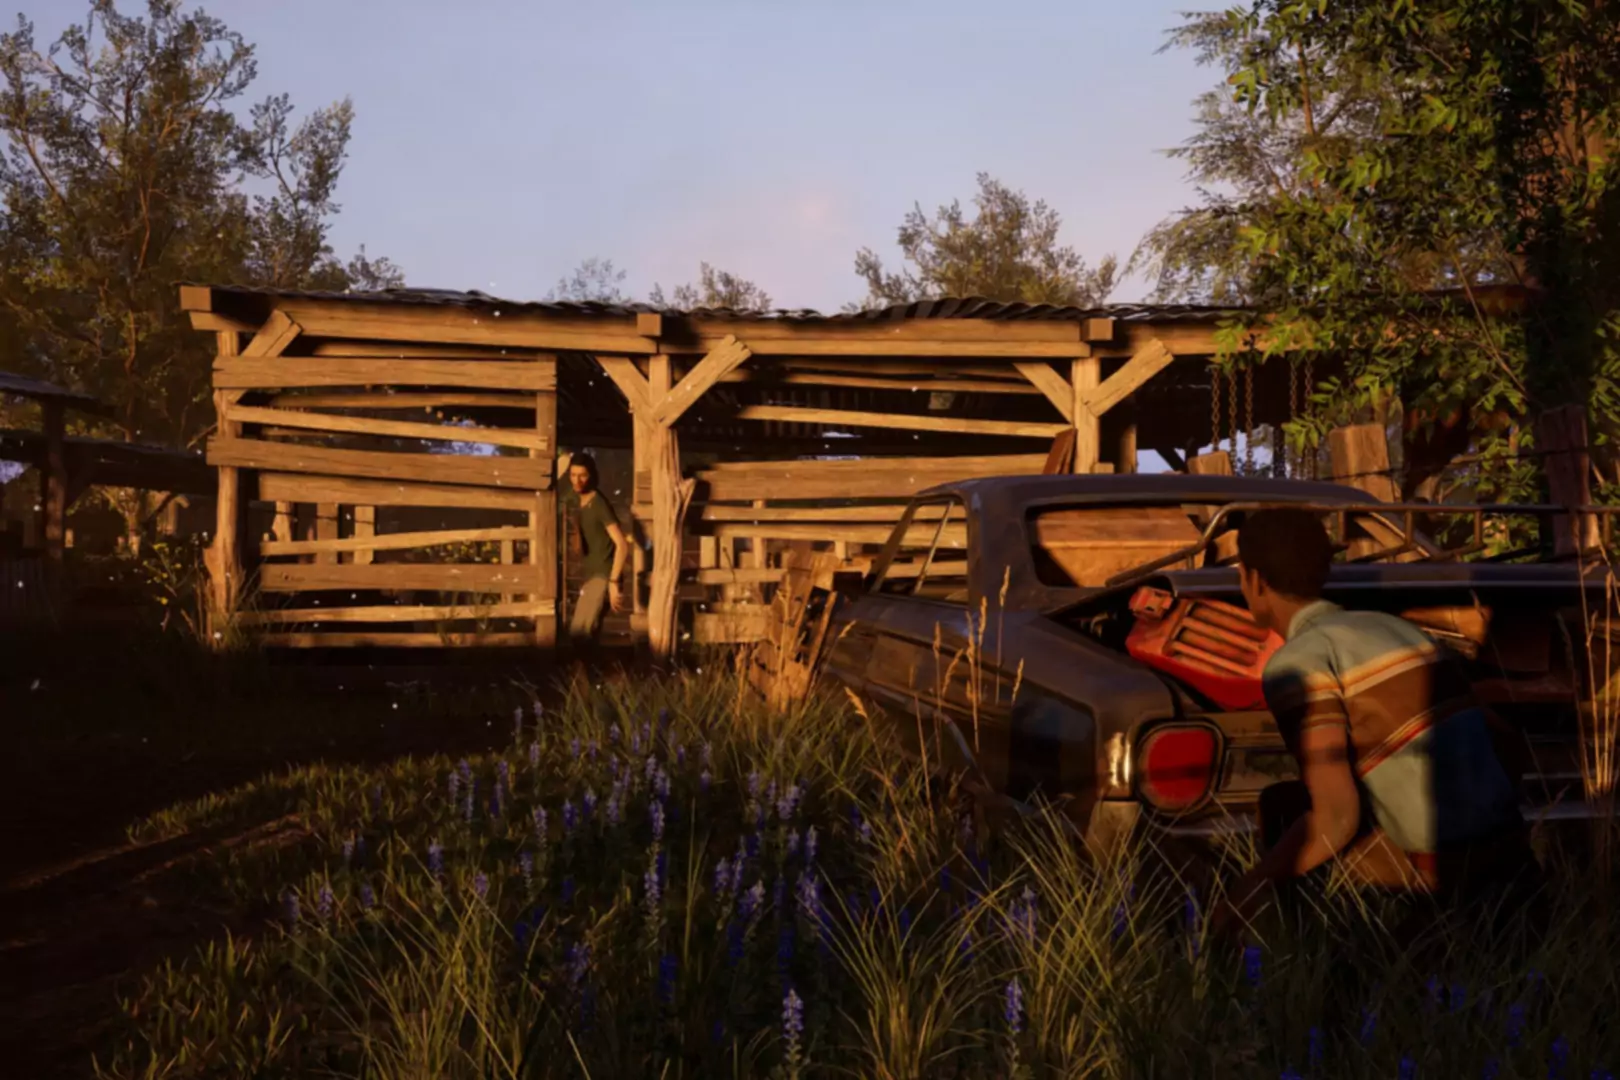 Zaslonska slika igre Texas Chainsaw Massacre, na kateri se lik skriva pred morilcem